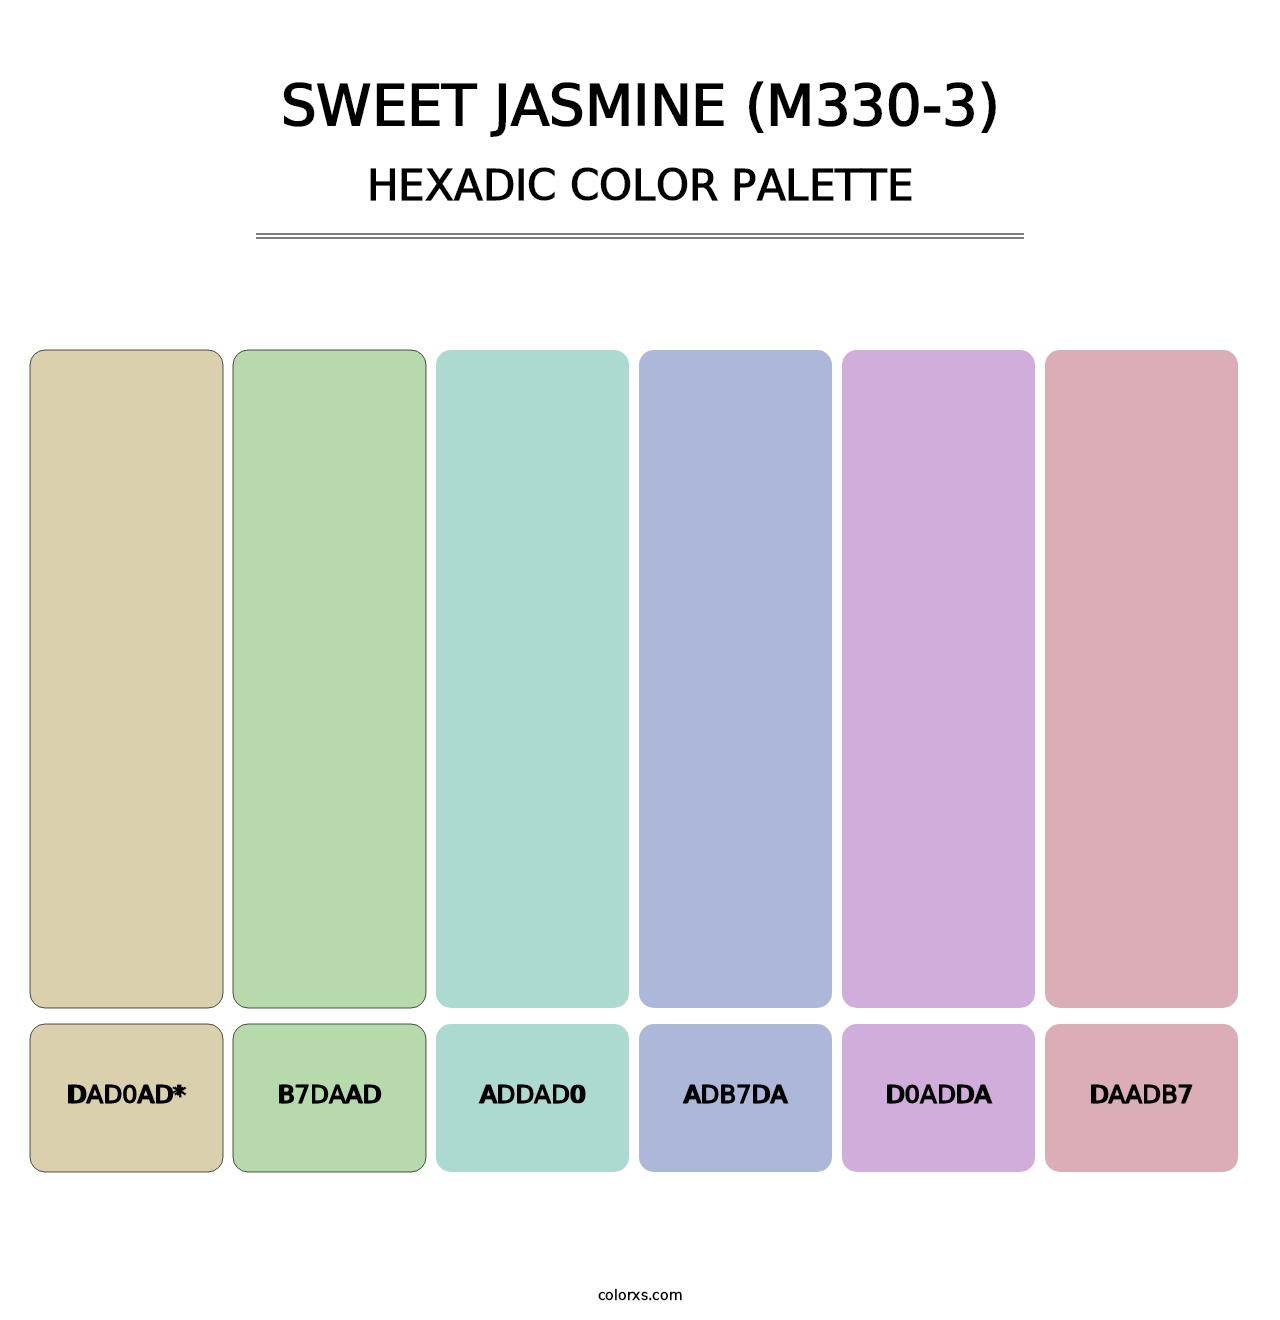 Sweet Jasmine (M330-3) - Hexadic Color Palette